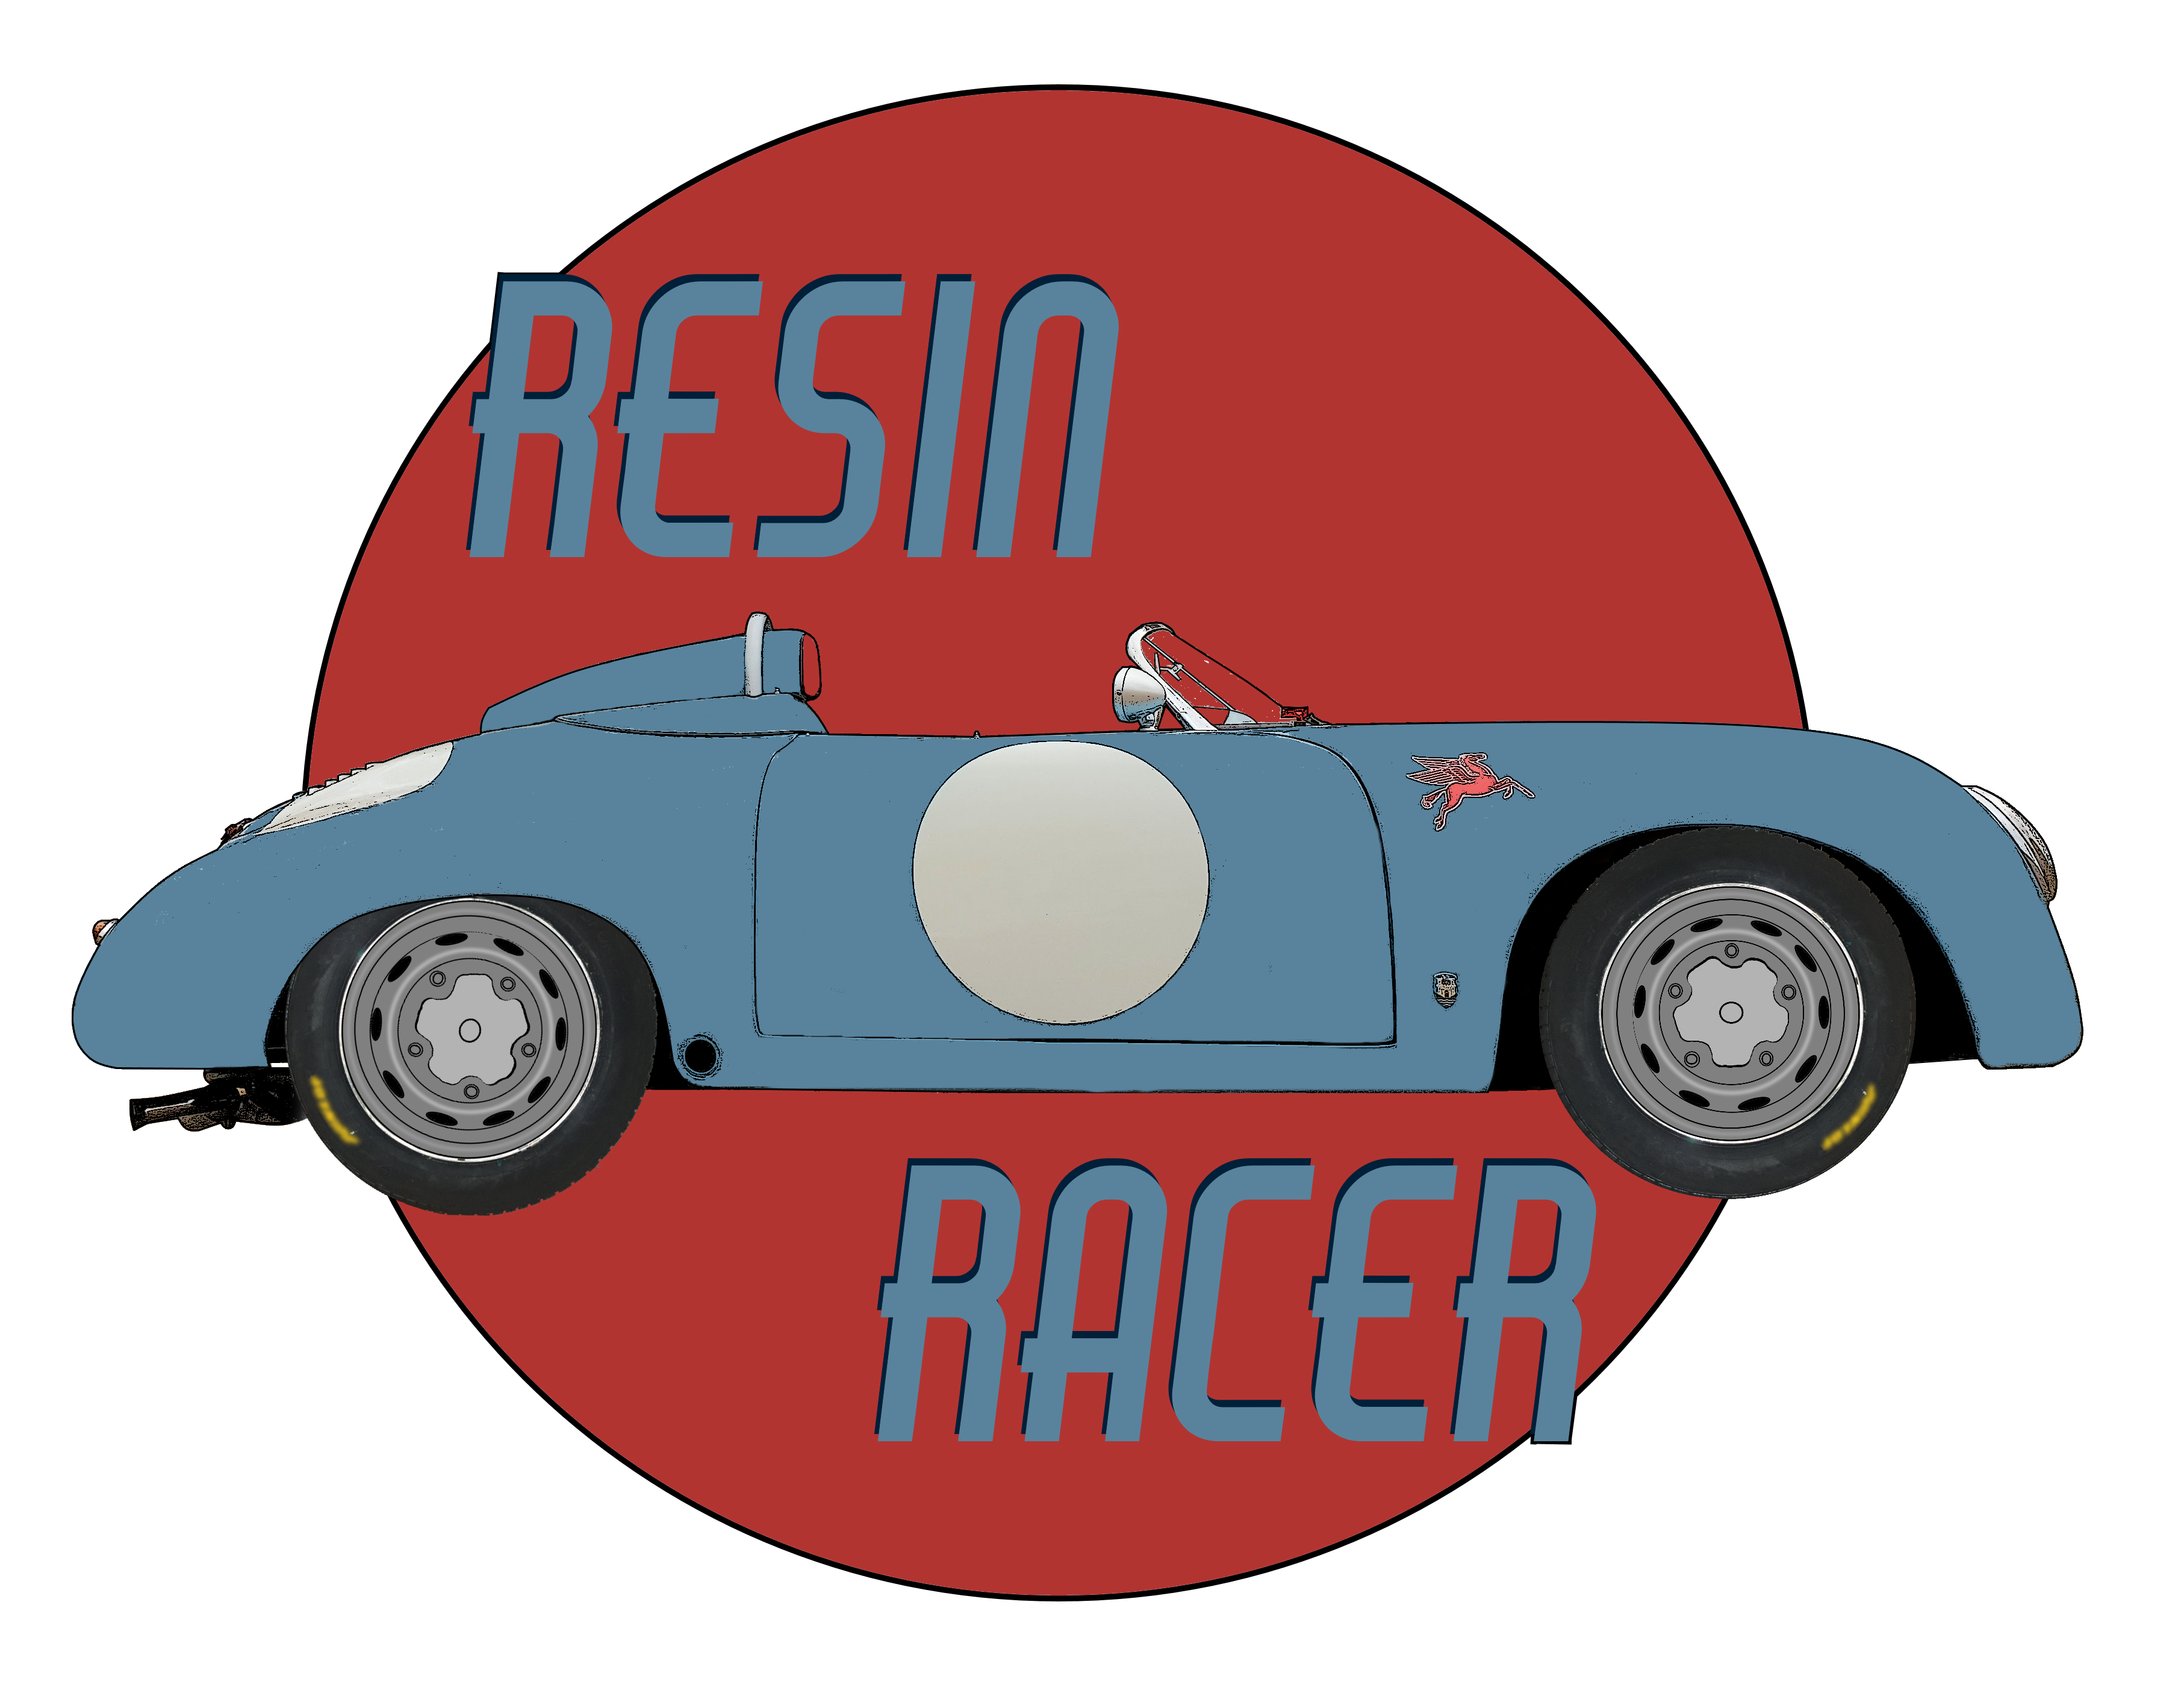 Resin Racer